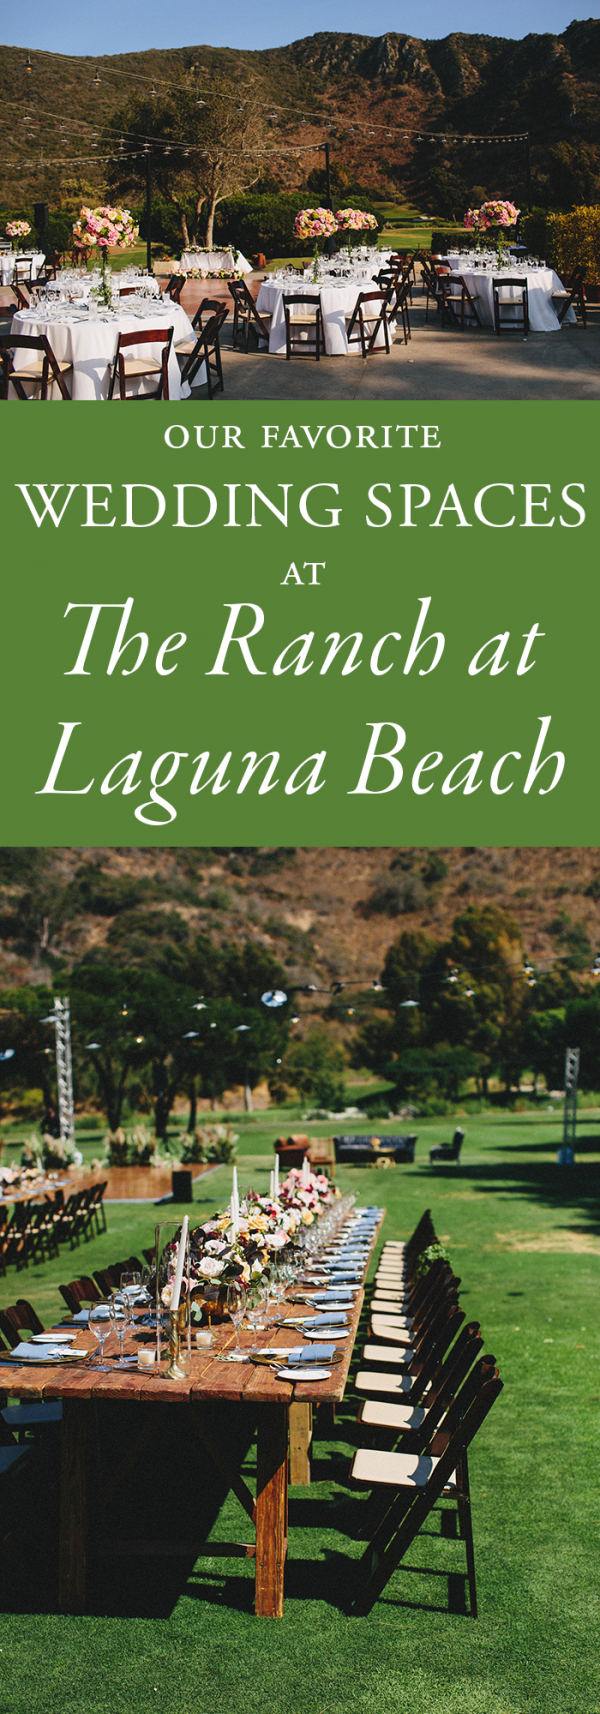 the ranch at laguna beach wedding spaces